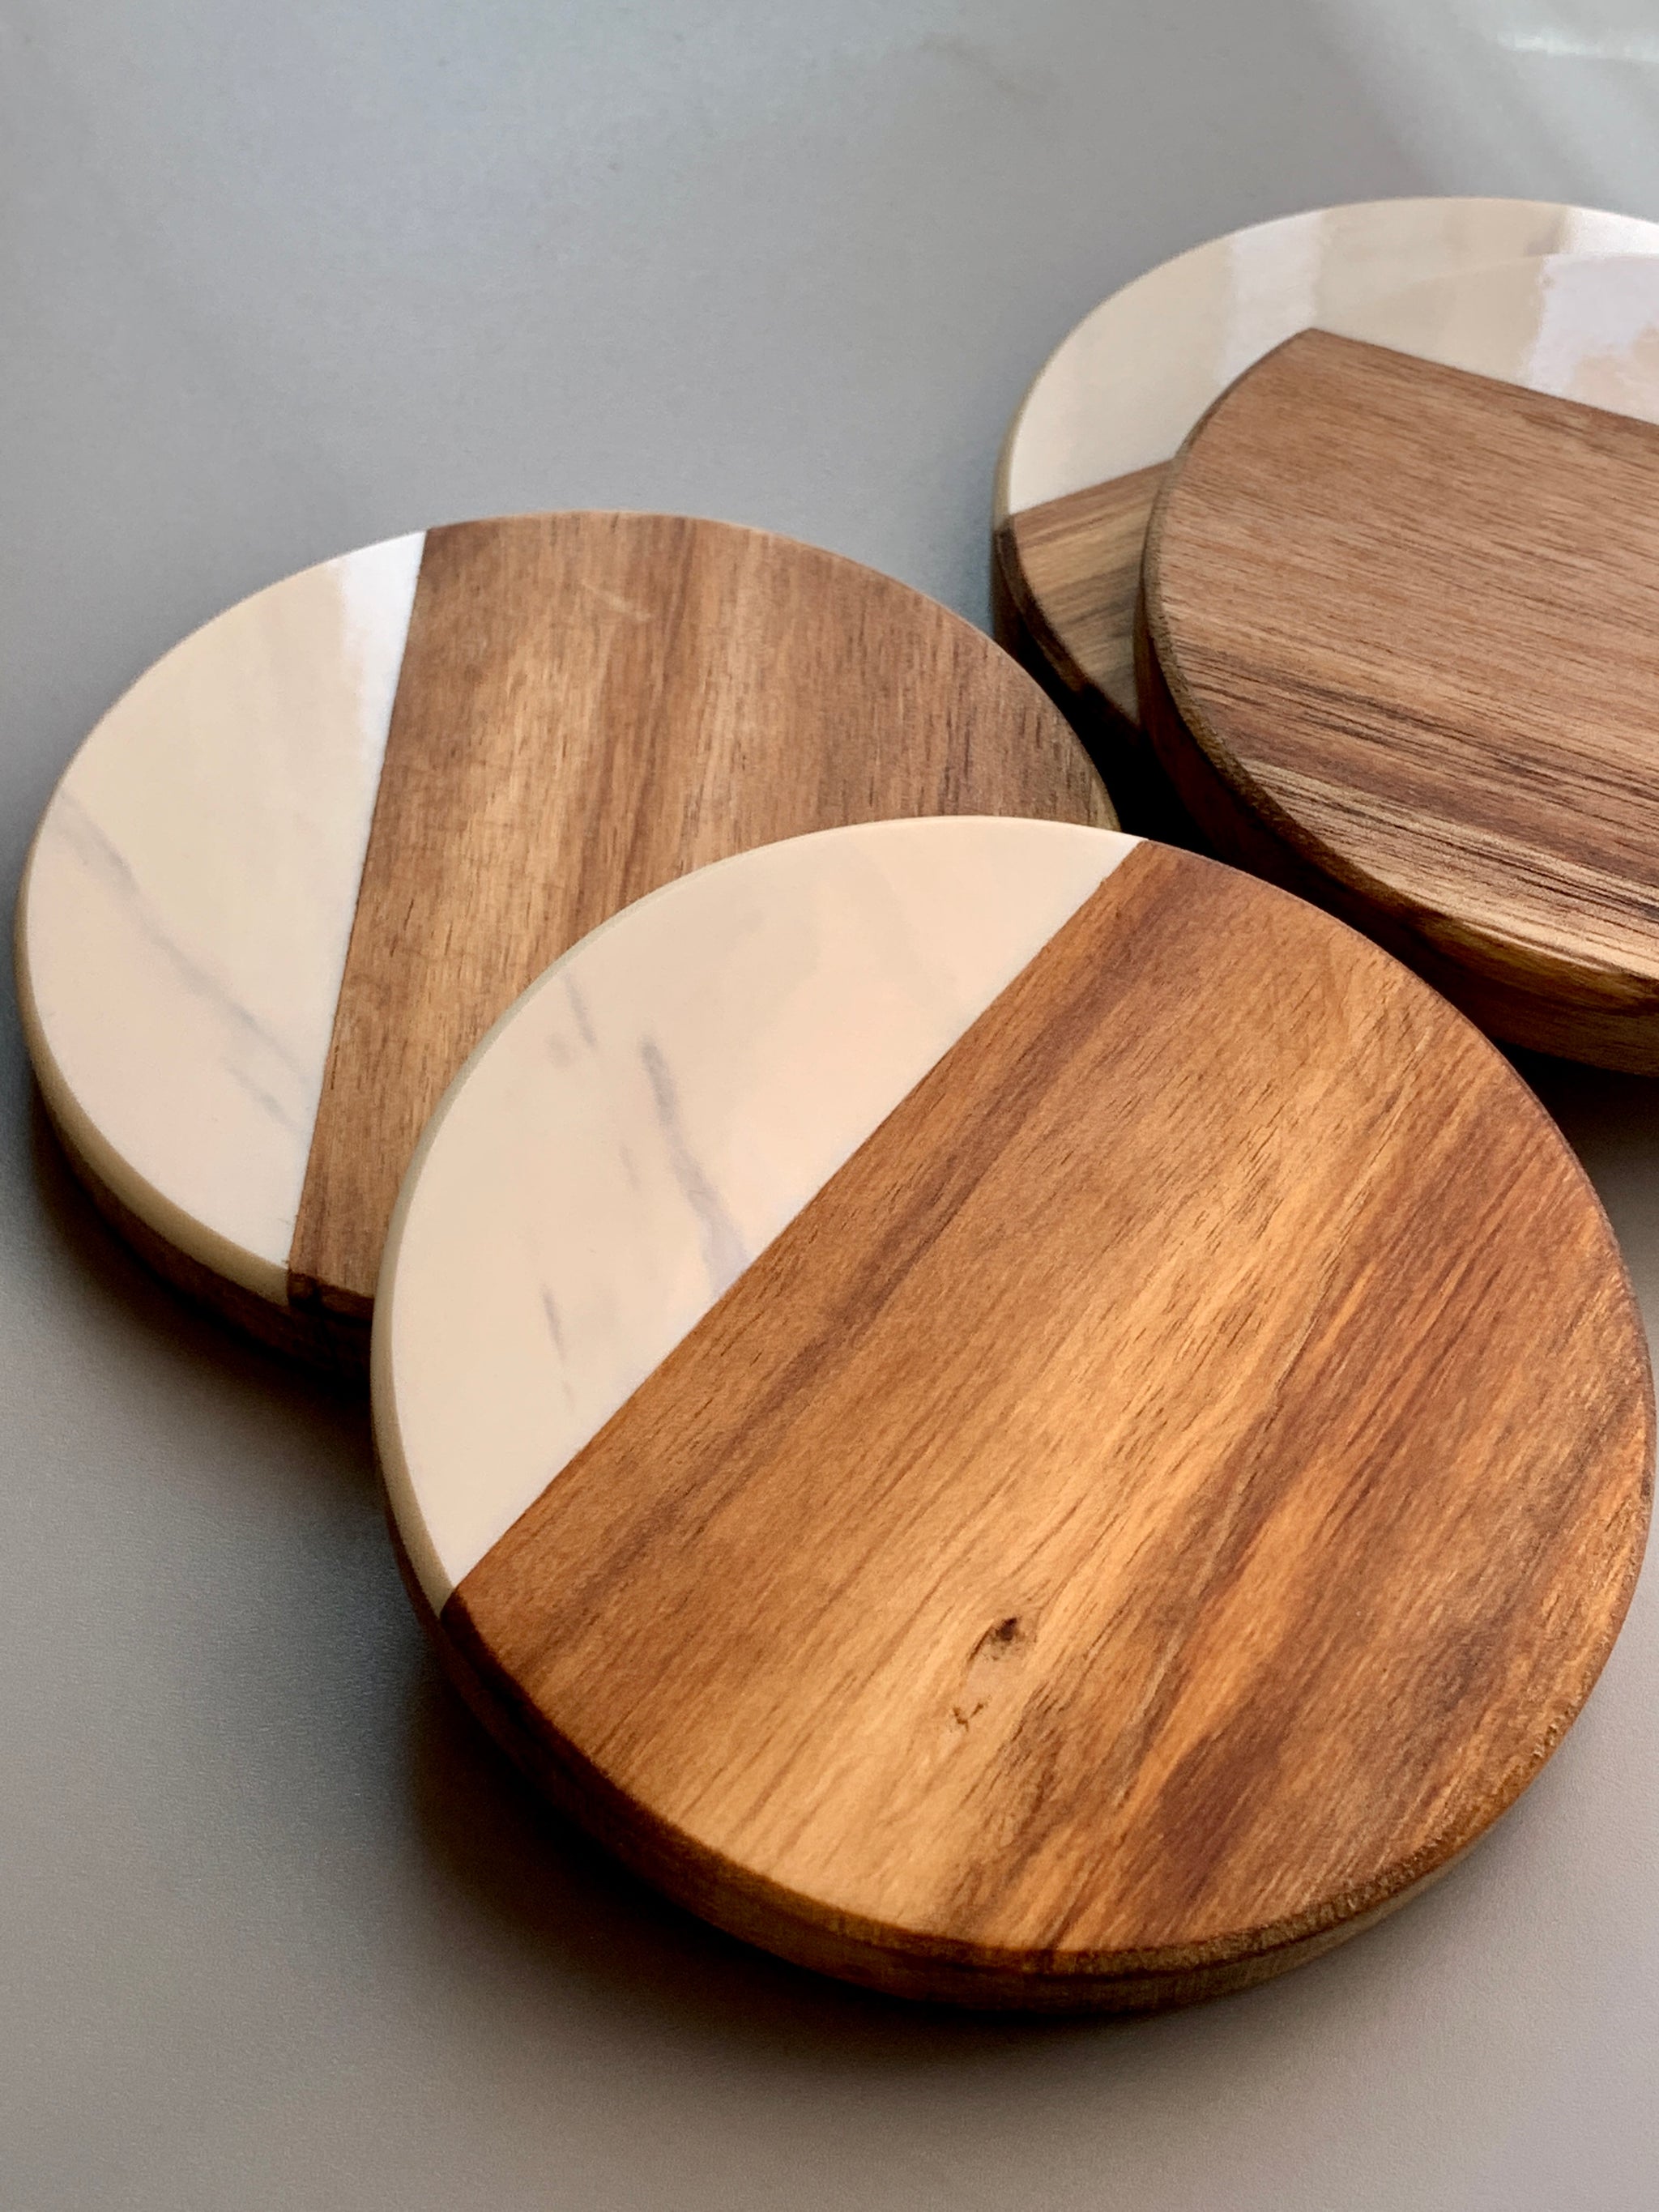 Kaizen Casa 4 Piece Set, Natural Acacia Wood Coasters, Set of 4